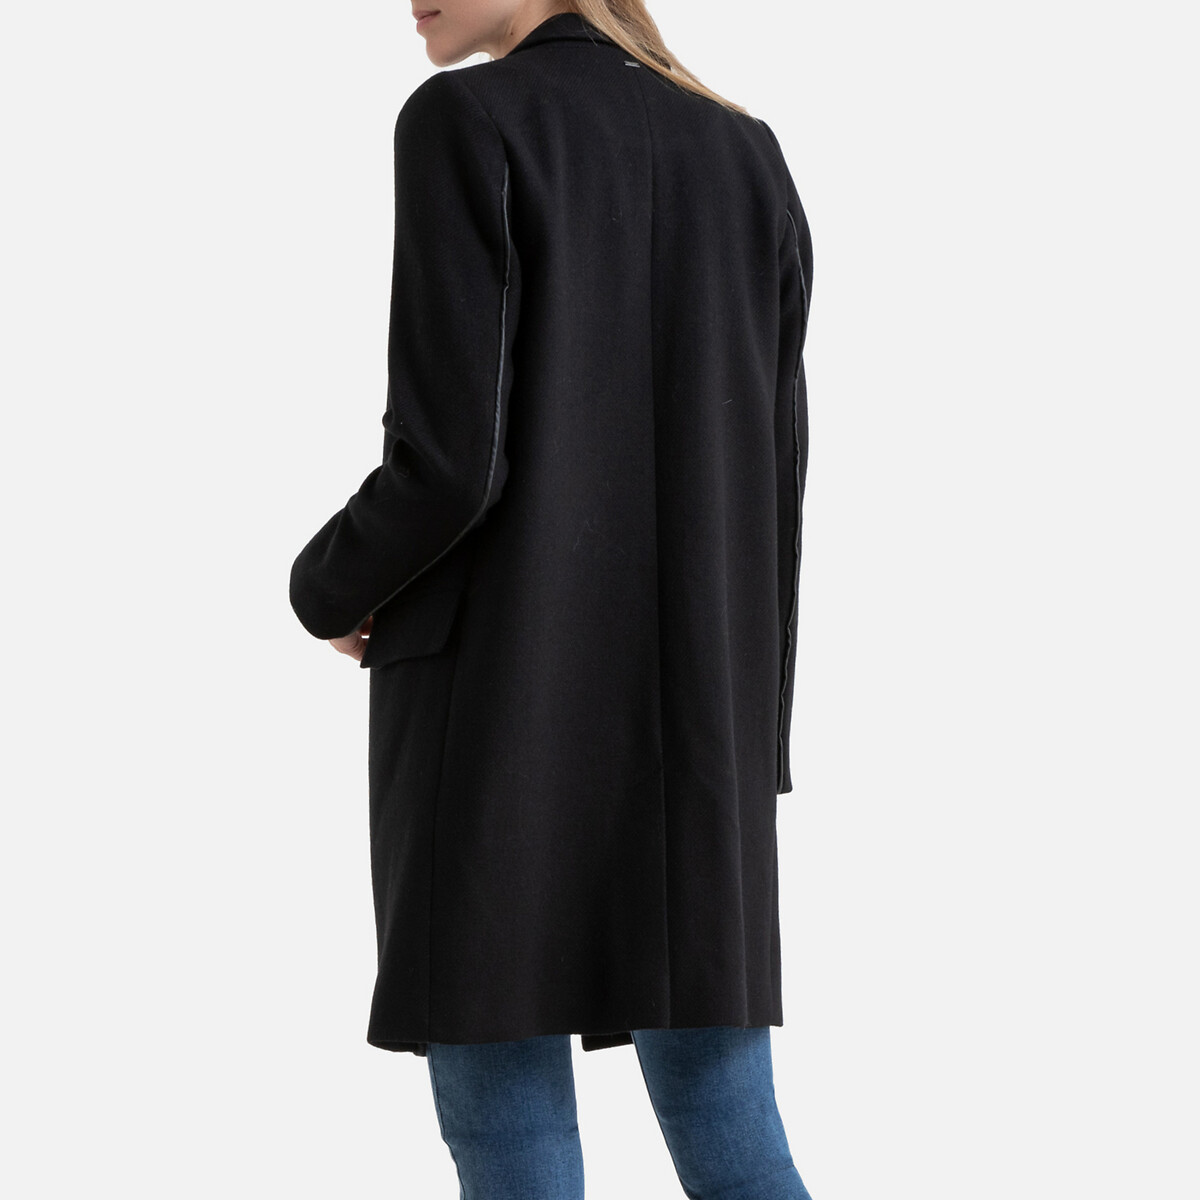 Пальто LaRedoute Средней длины с застежкой на пуговицы S черный, размер S - фото 3